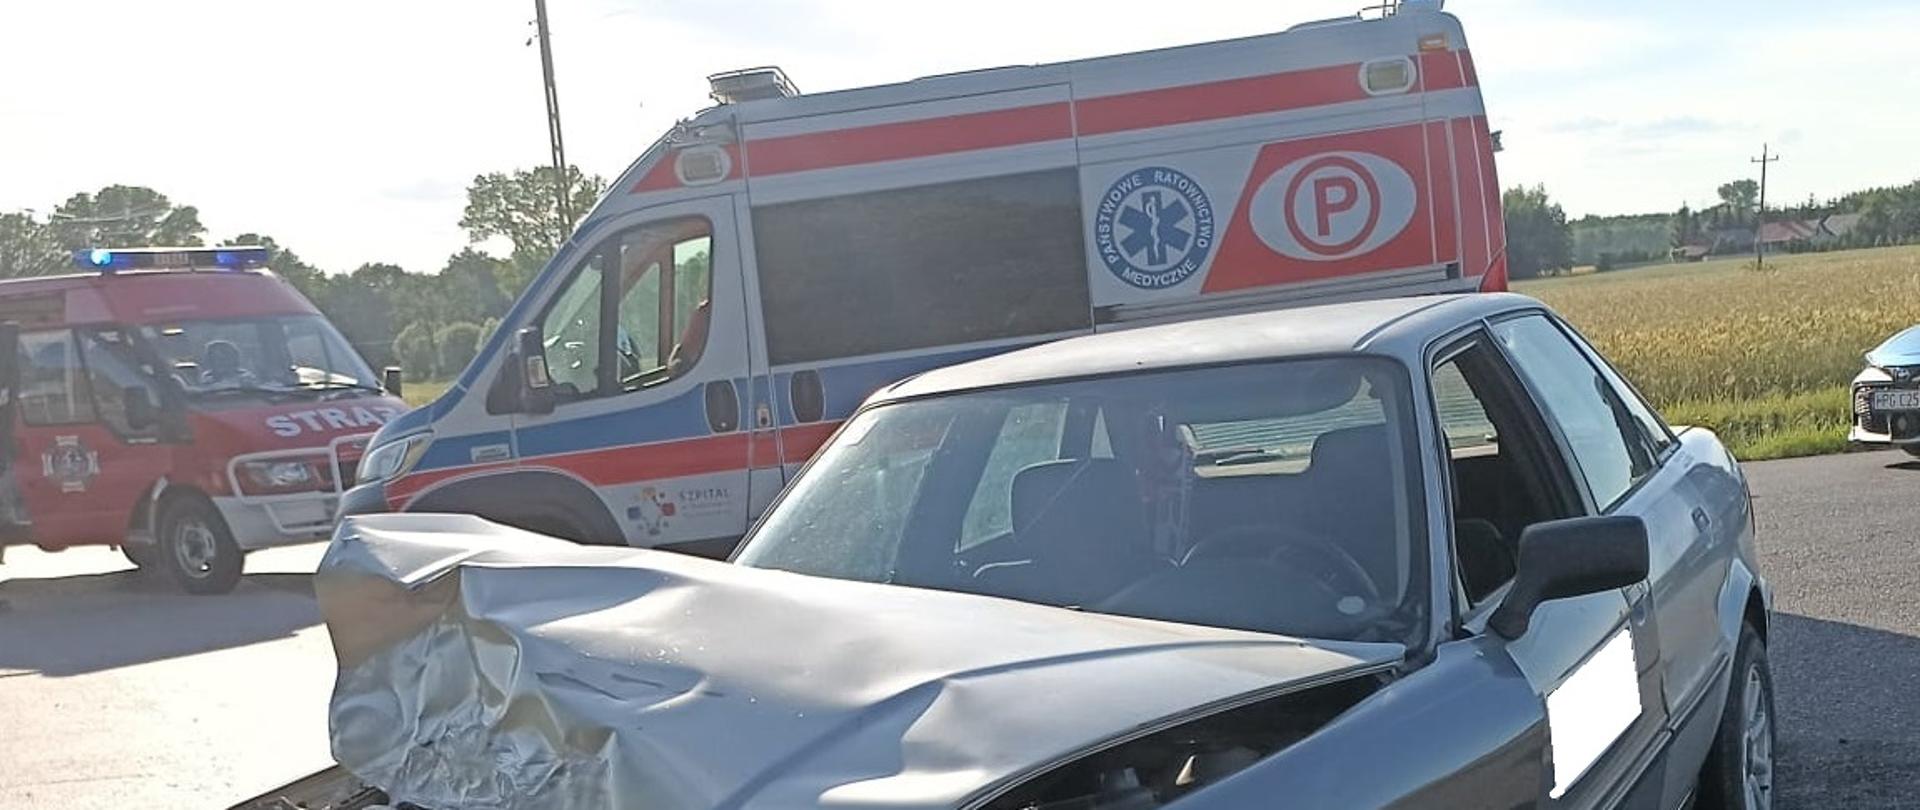 Na zdjęciu widać uszkodzony samochód osobowy , rozlane płyny eksploatacyjne, za pojazdem Zespół Ratownictwa medycznego i pojazdy Straży Pożarnej.